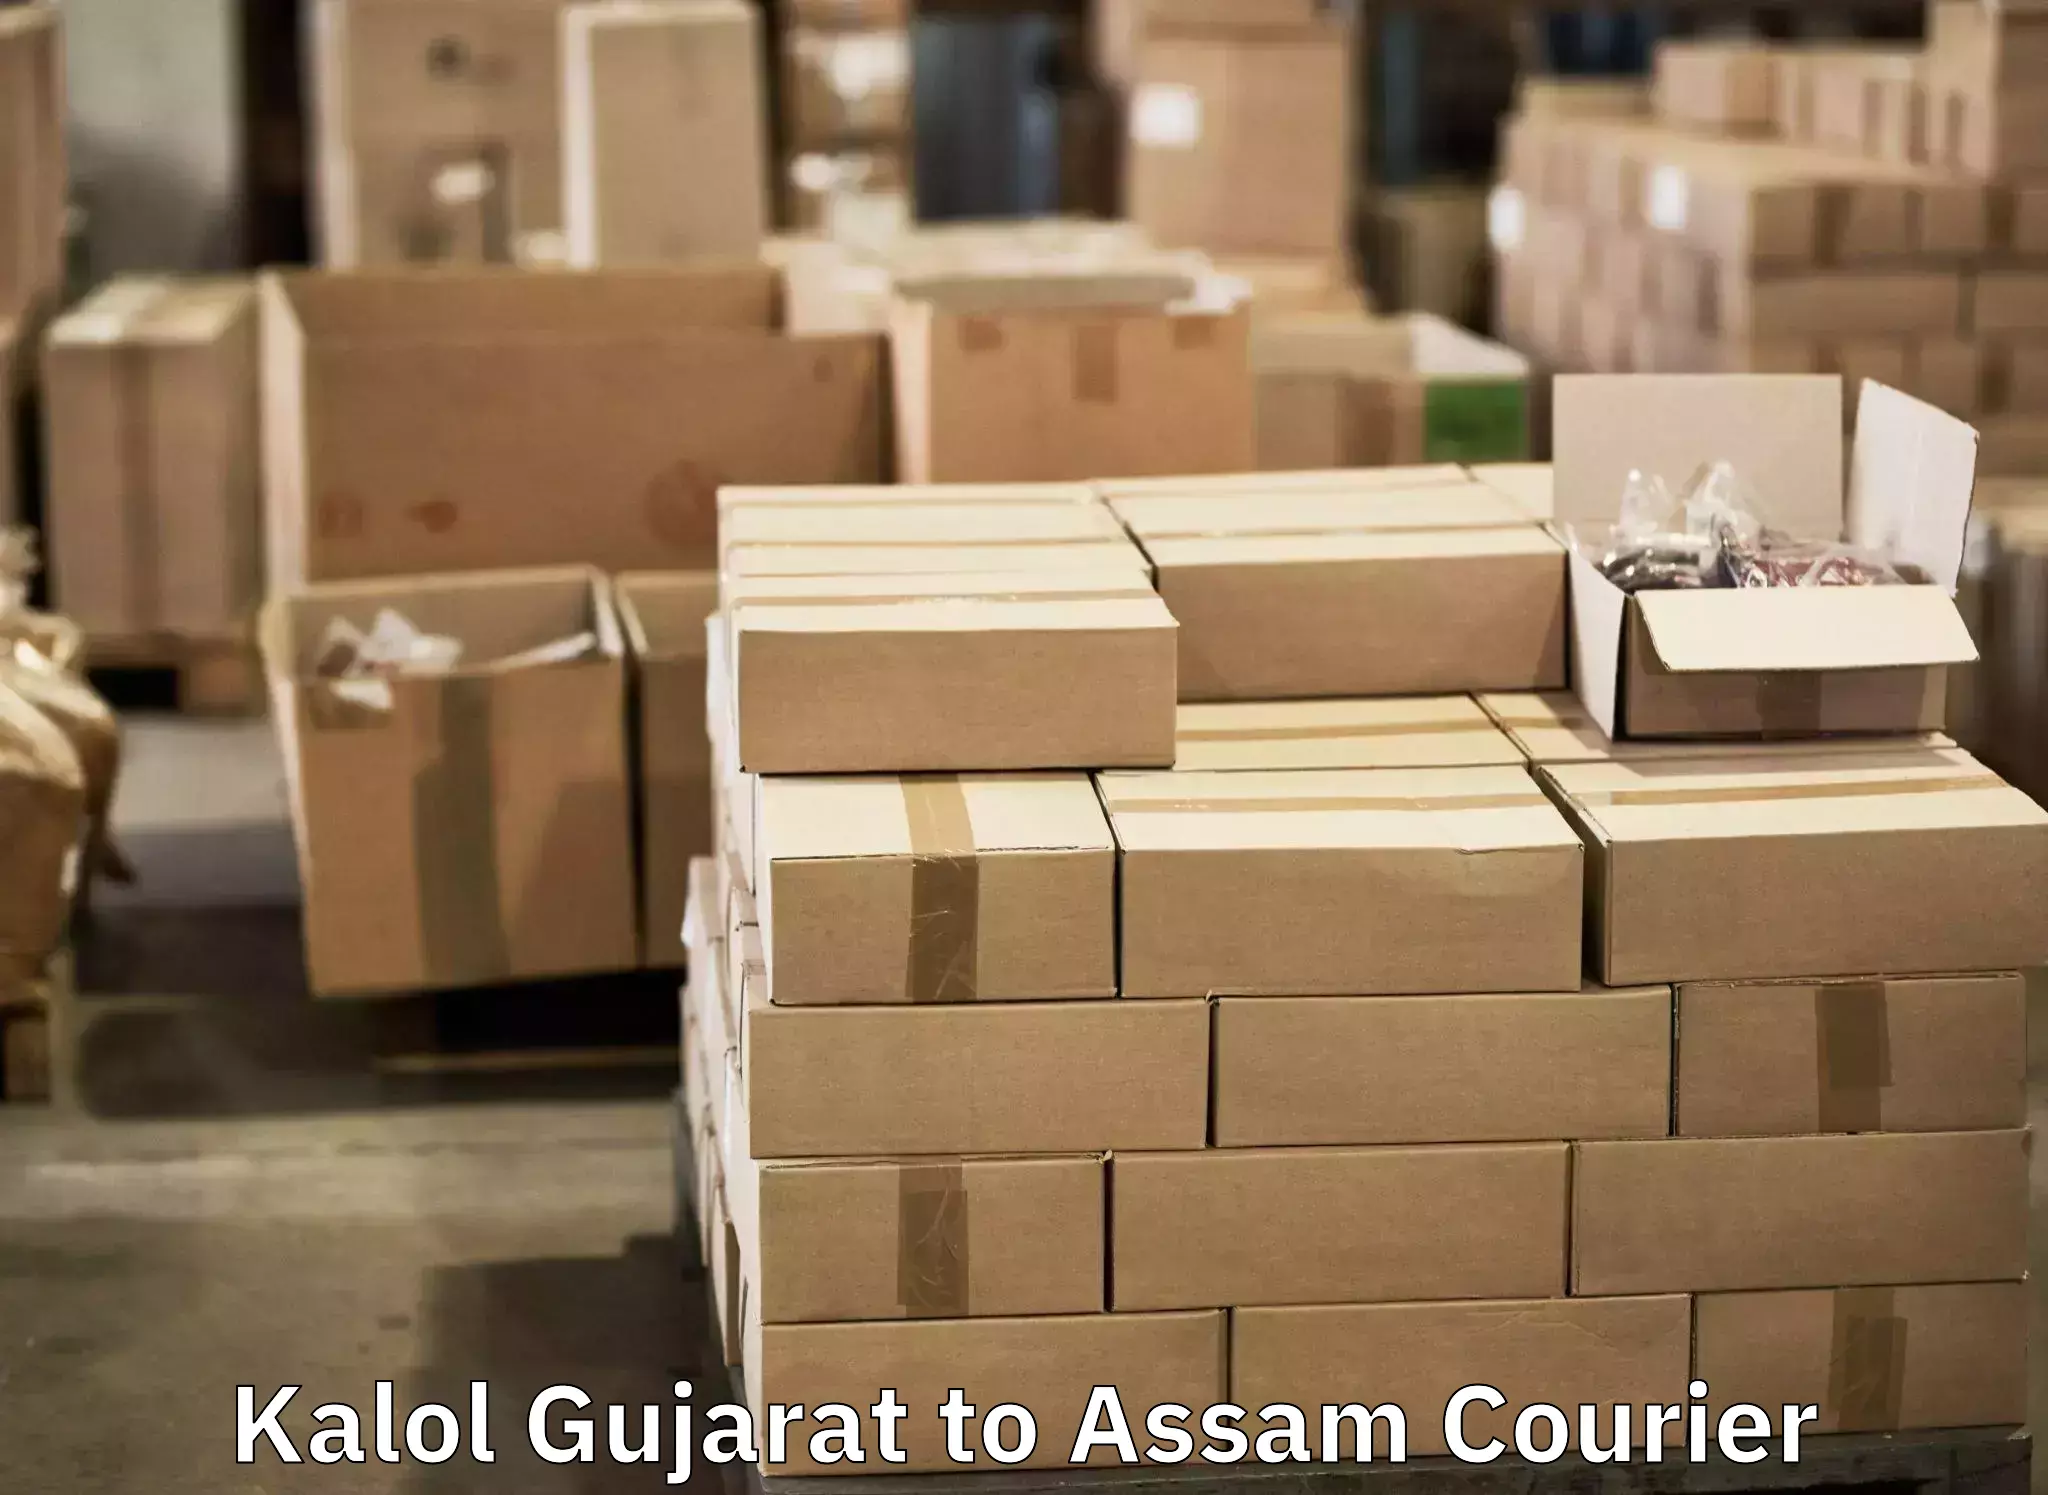 Baggage transport network Kalol Gujarat to Nagaon